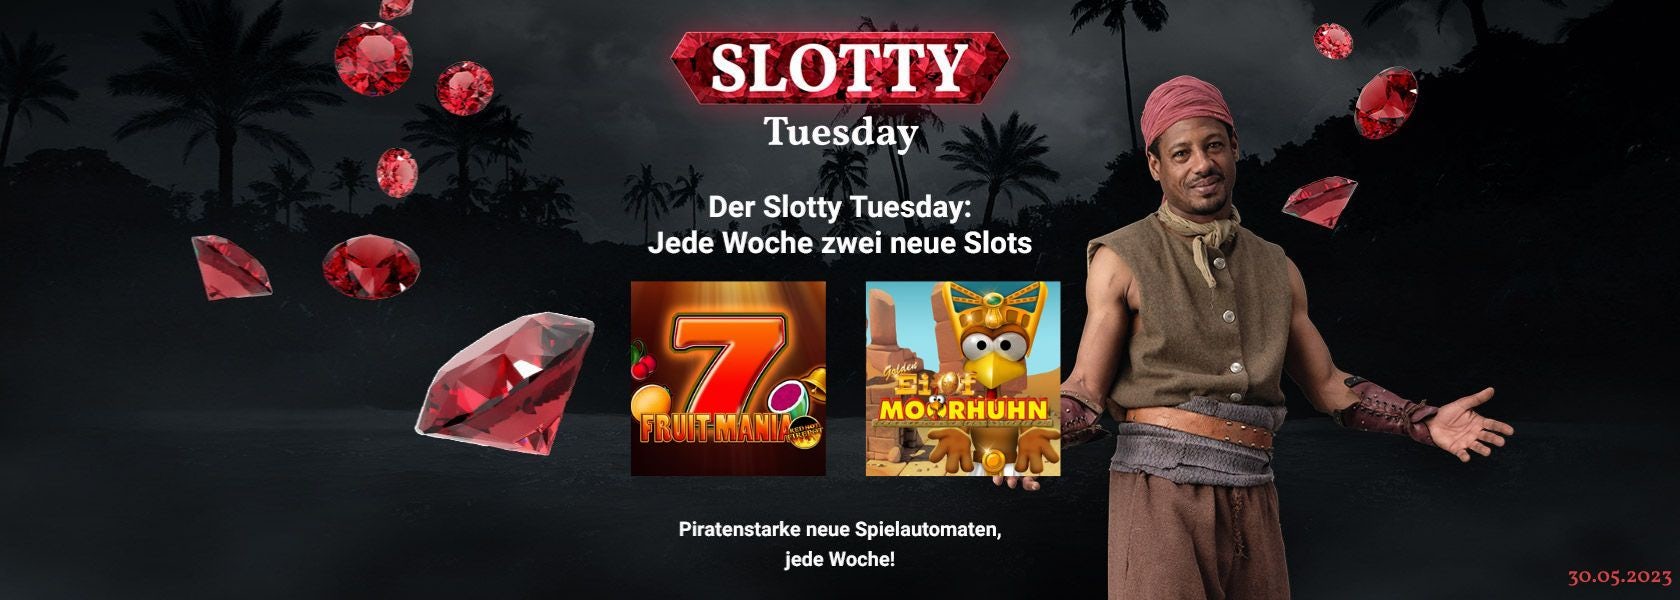 JPI-Header-Slotty-Tuesday-3005